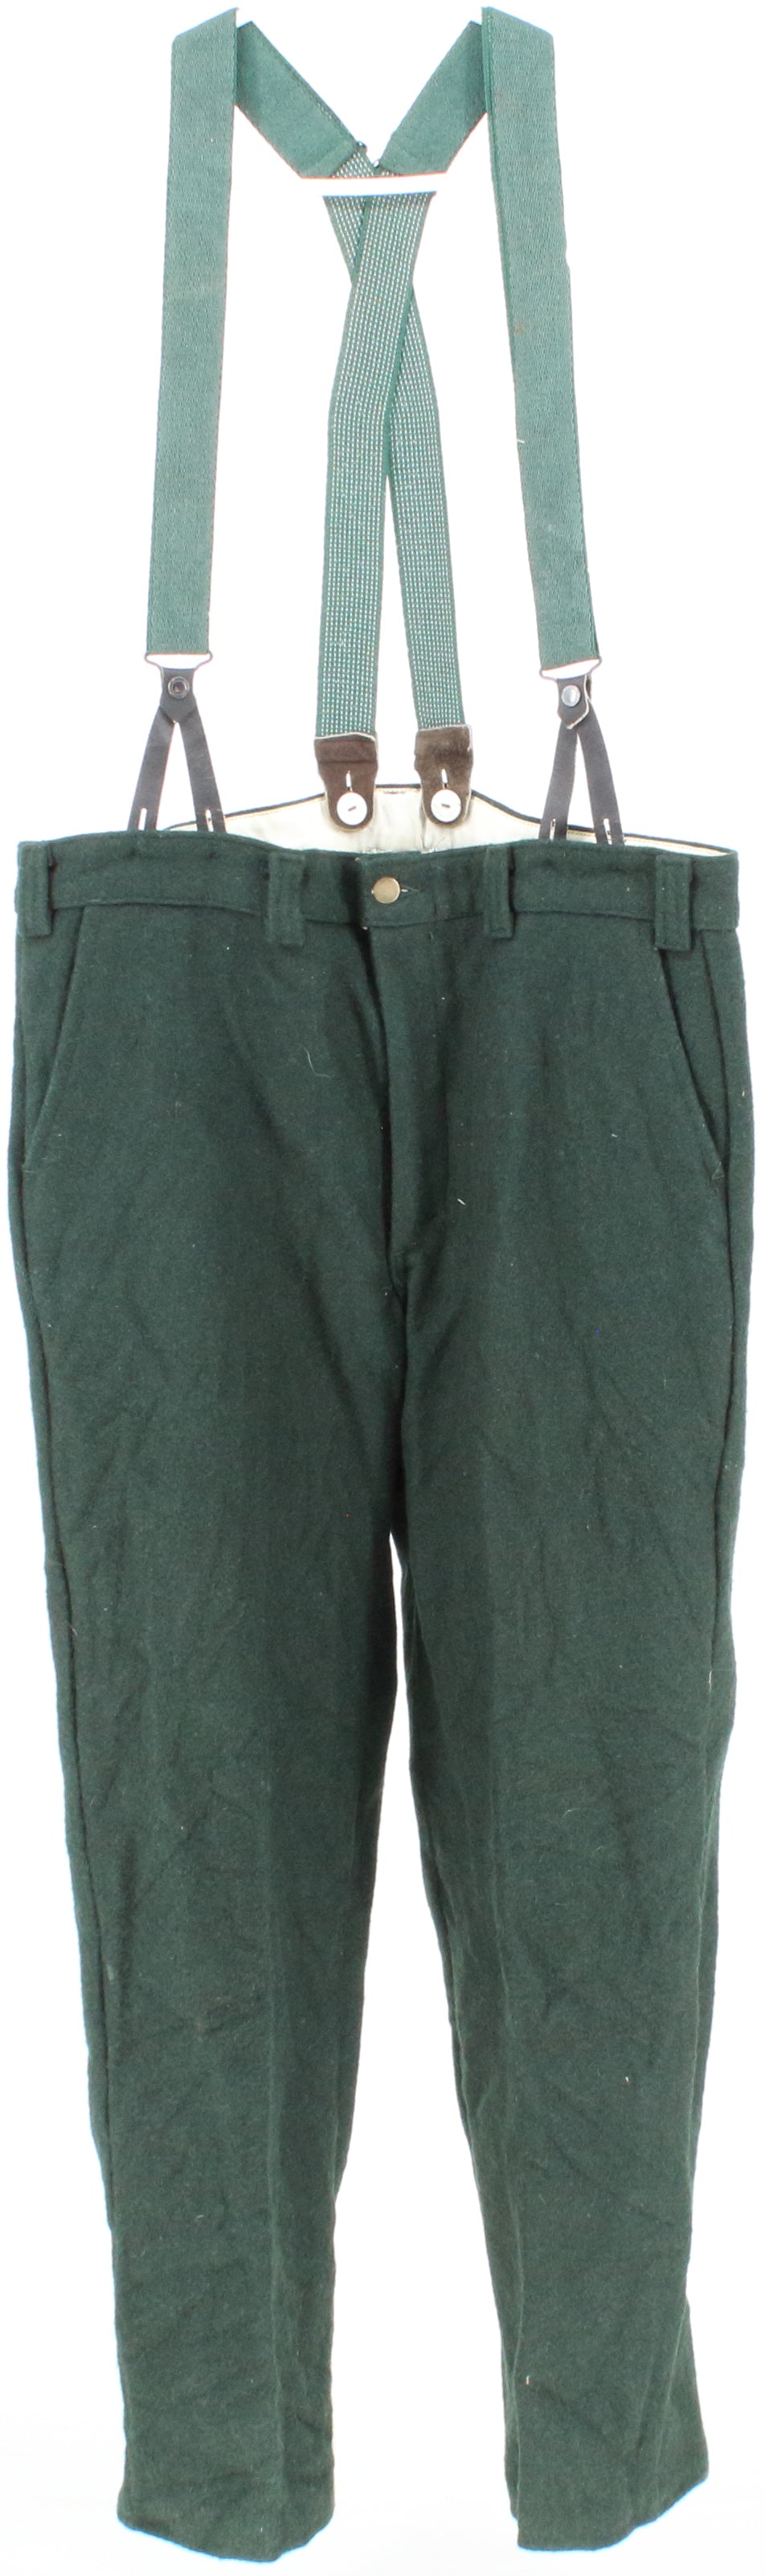 Codet Dark Green Wool Pants With Suspenders